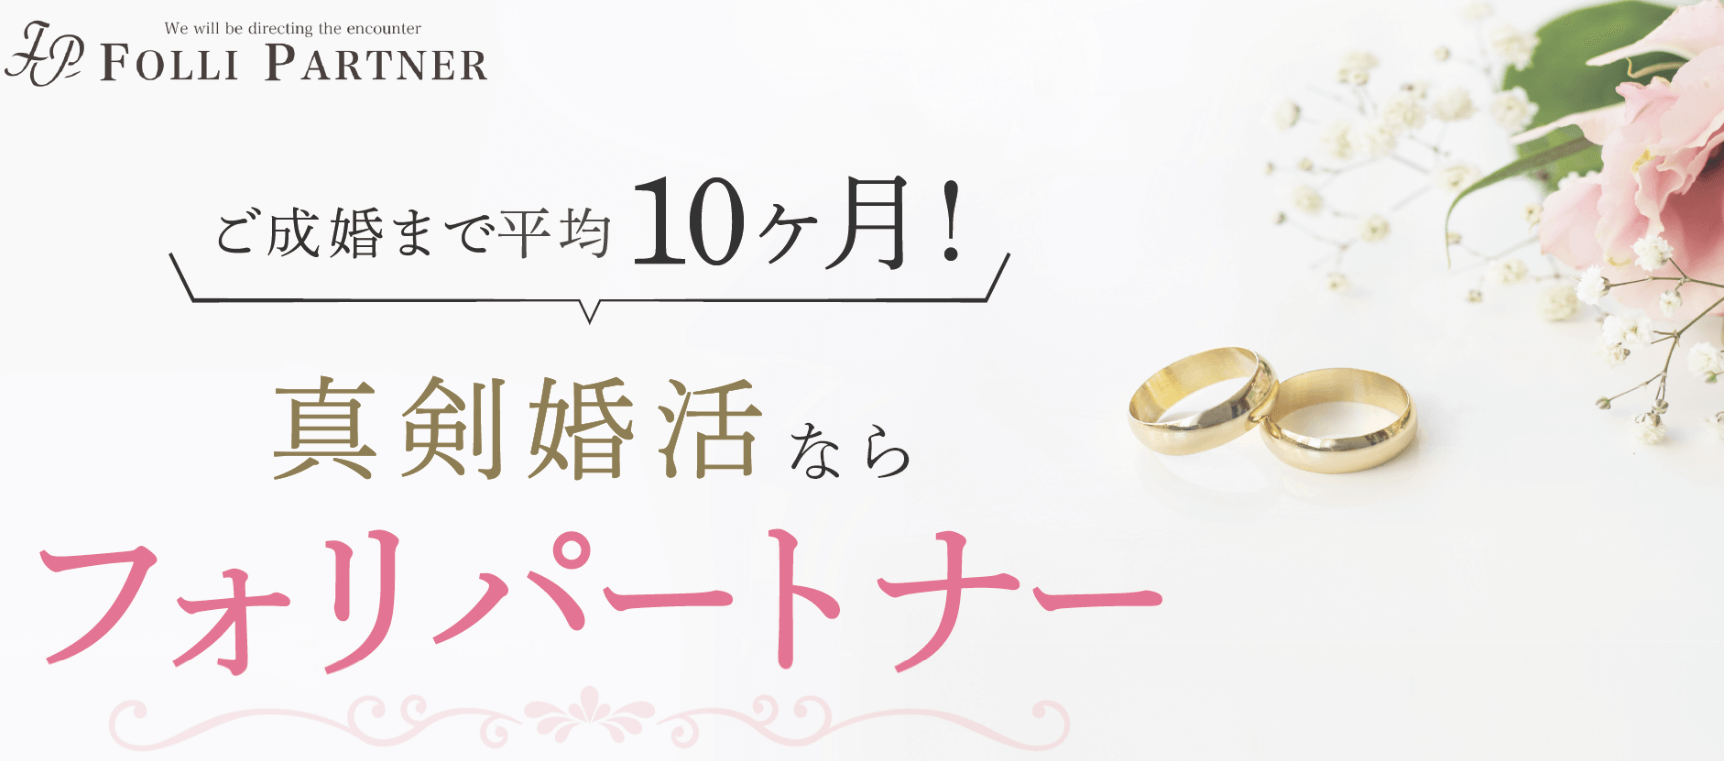 東京での婚活を考えている方々にとって大変興味深い話題をご紹介します。それは、「東京フォリパートナー」という結婚相談所です。無料で登録できるこの相談所は、平均10ヶ月でのご成婚率が非常に高いことで知られています。では、その魅力を掘り下げていきましょう。